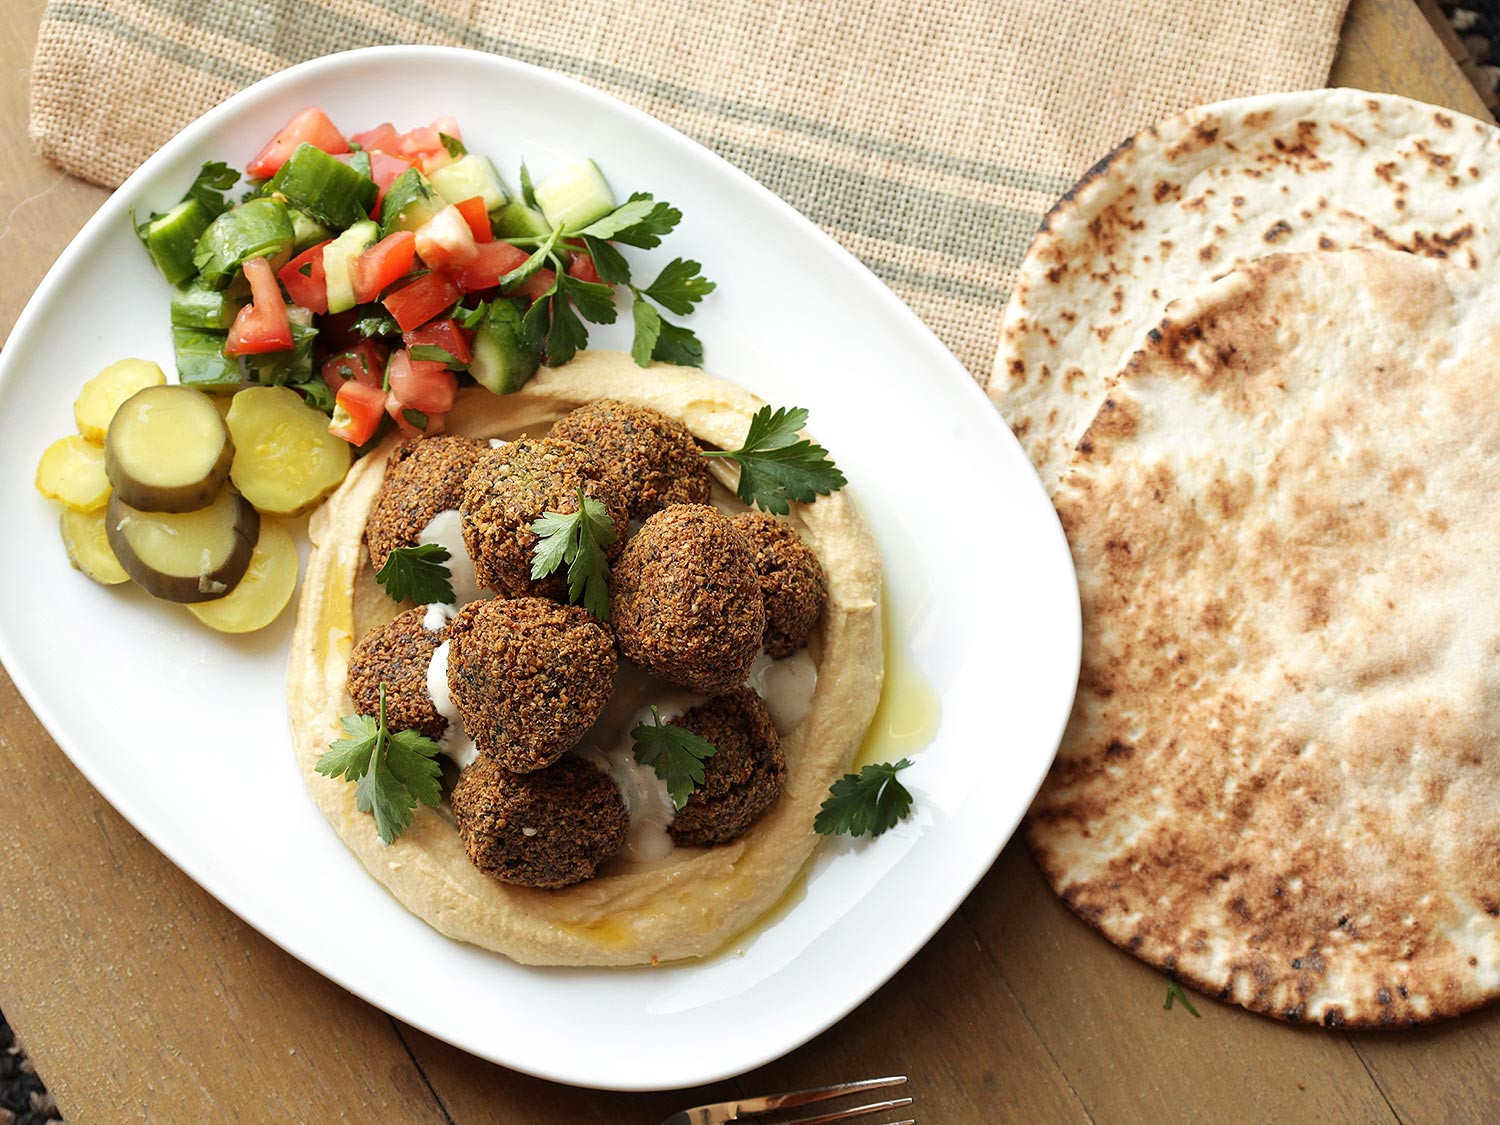 Middle Eastern Recipes
 12 Middle Eastern Recipes From Baba Ganoush to Zhug